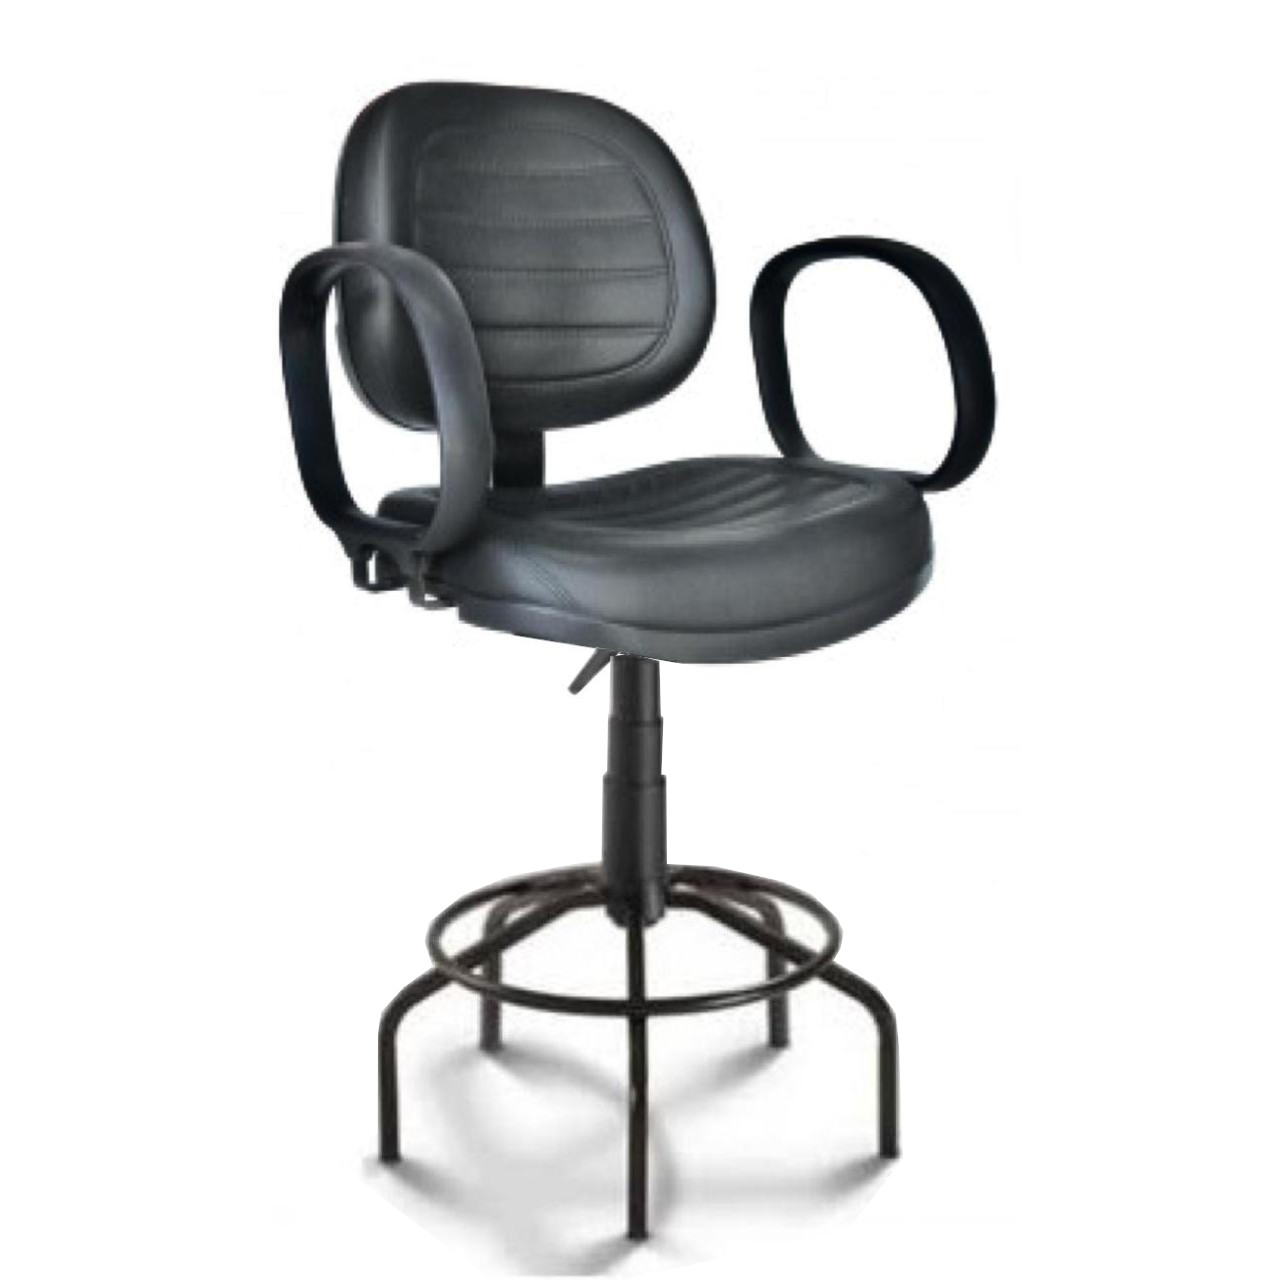 Cadeira Caixa EXECUTIVA COSTURADA Braço Corsa – (Aranha MARTIFLEX) – Cor Preta – 35035 AMANHECER MÓVEIS